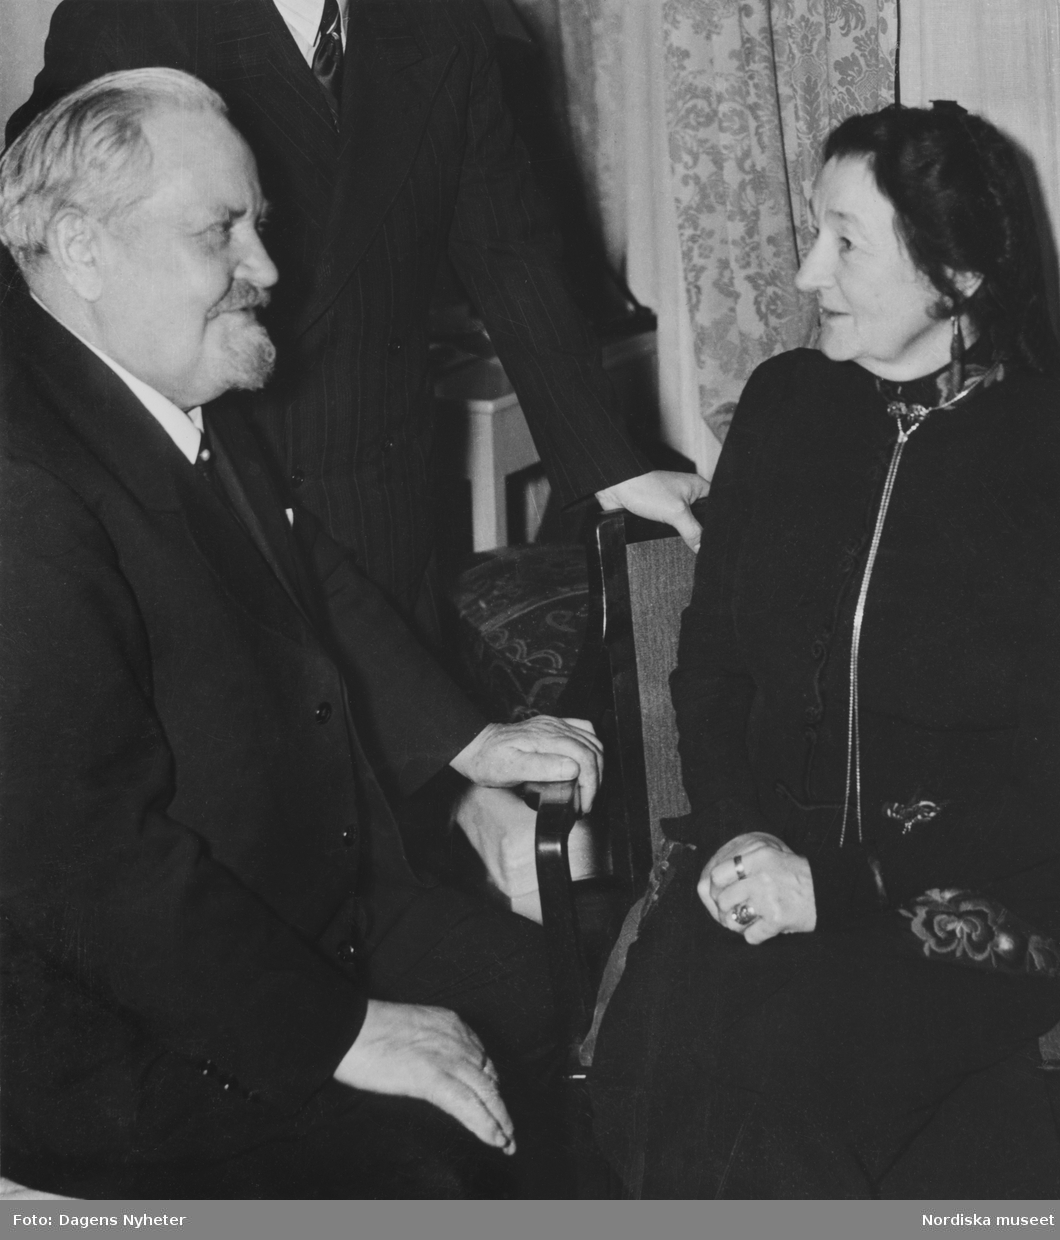 Konstnären Karl Tirén och professorskan Emilie Demant Hatt på Hotel Stockholm i samband med Nordiska museets Lapplandsafton 4 december 1940.